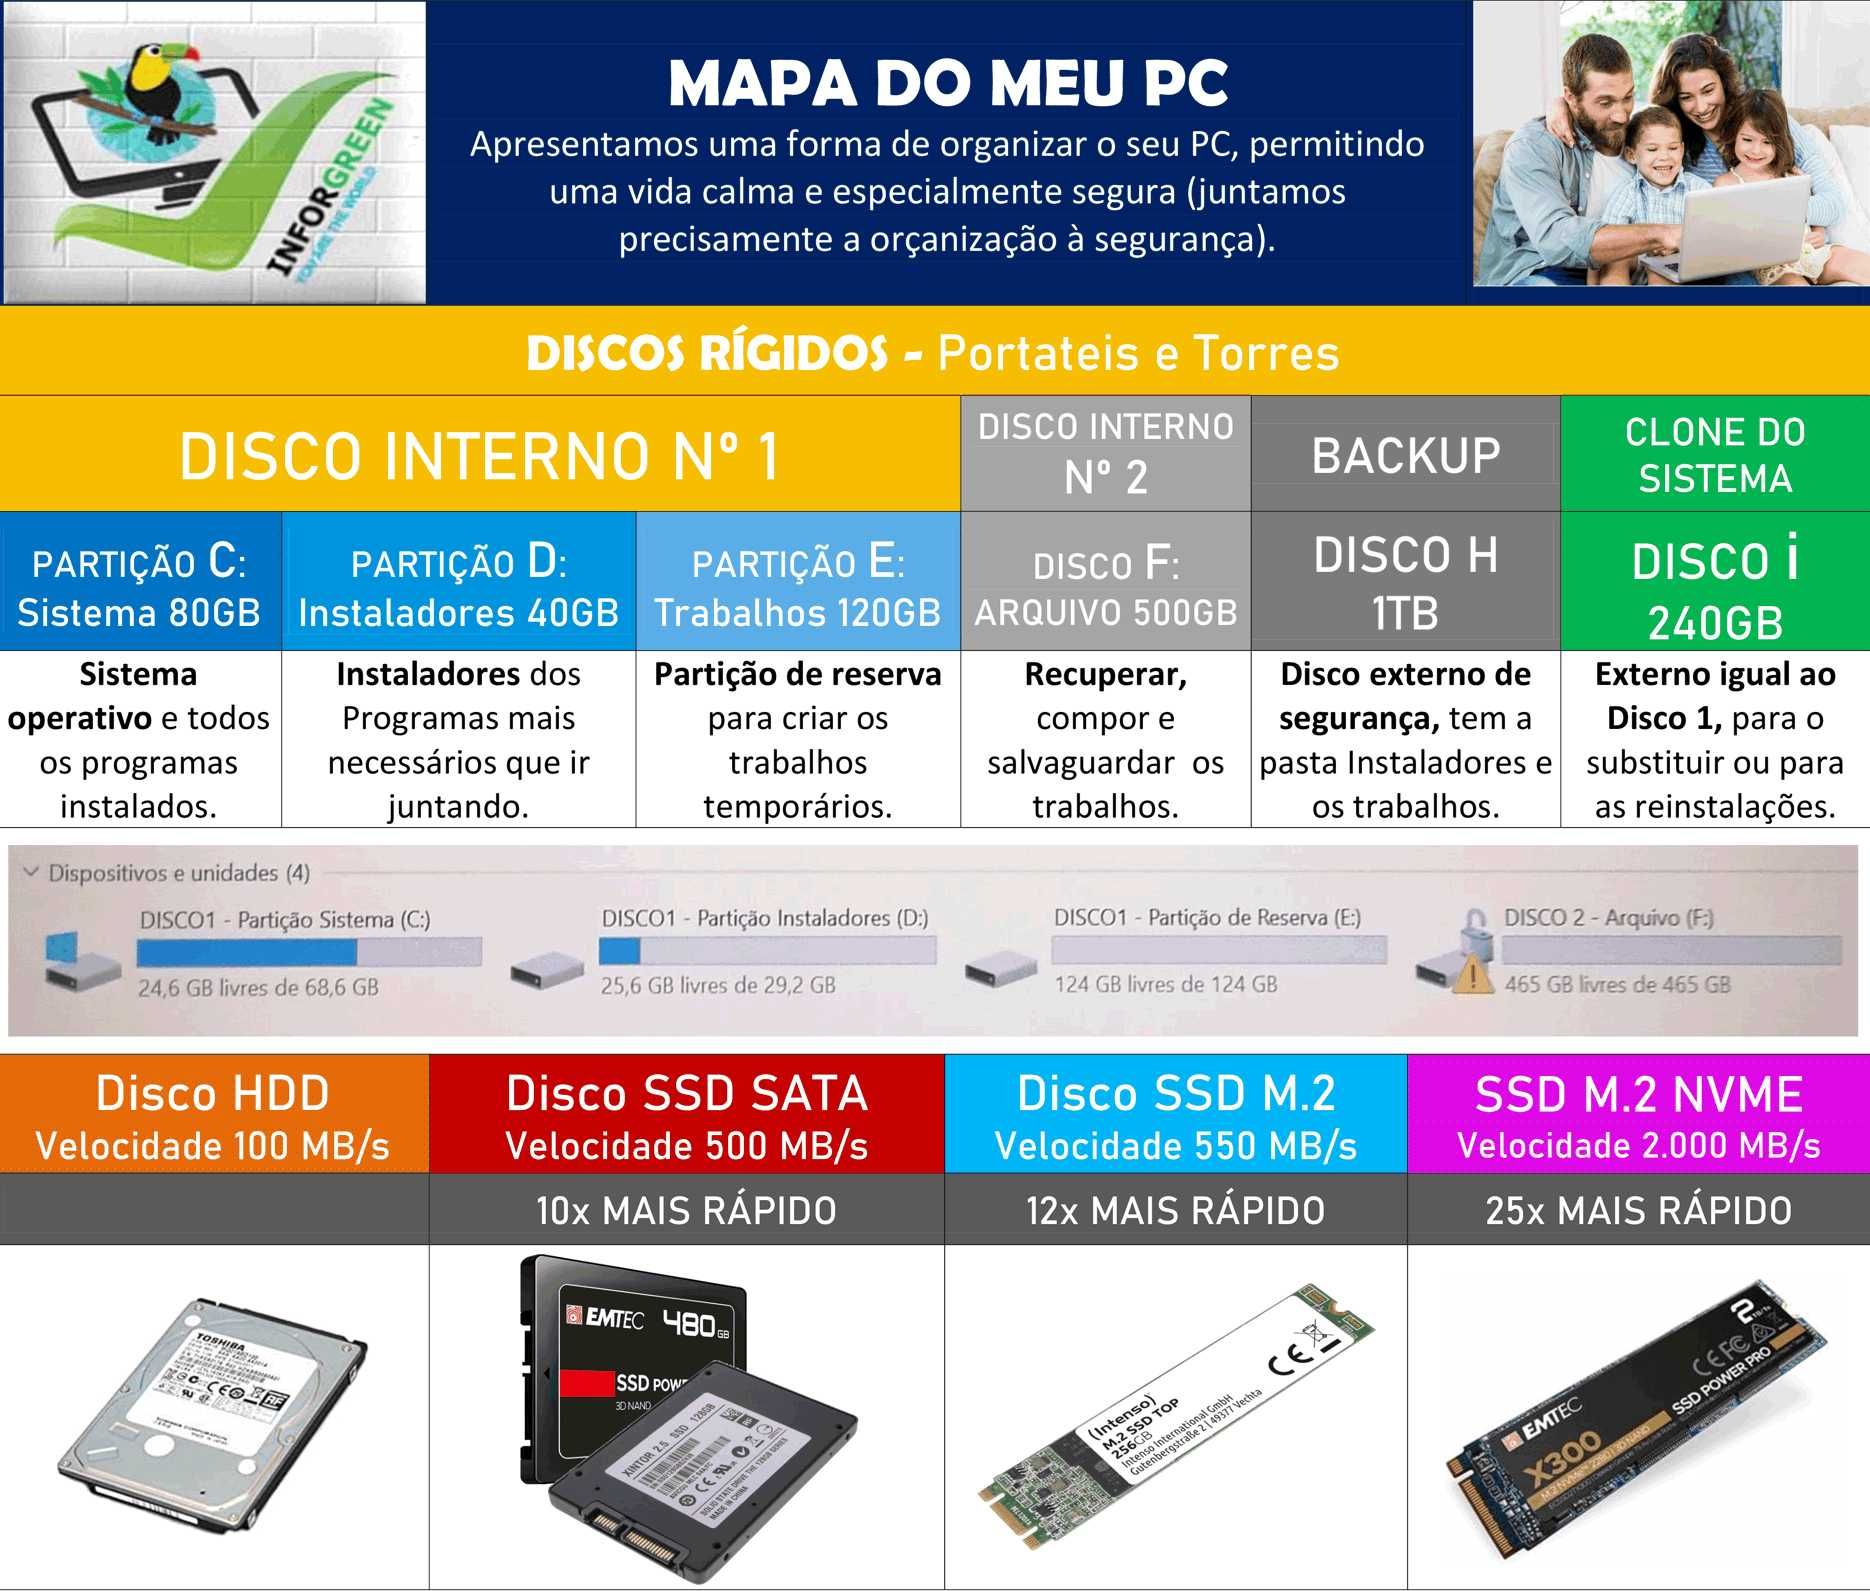 MINI-PC HP T530 TODAS AS CONFIGURAÇÕES  - EXCELENTE SEMINOVO